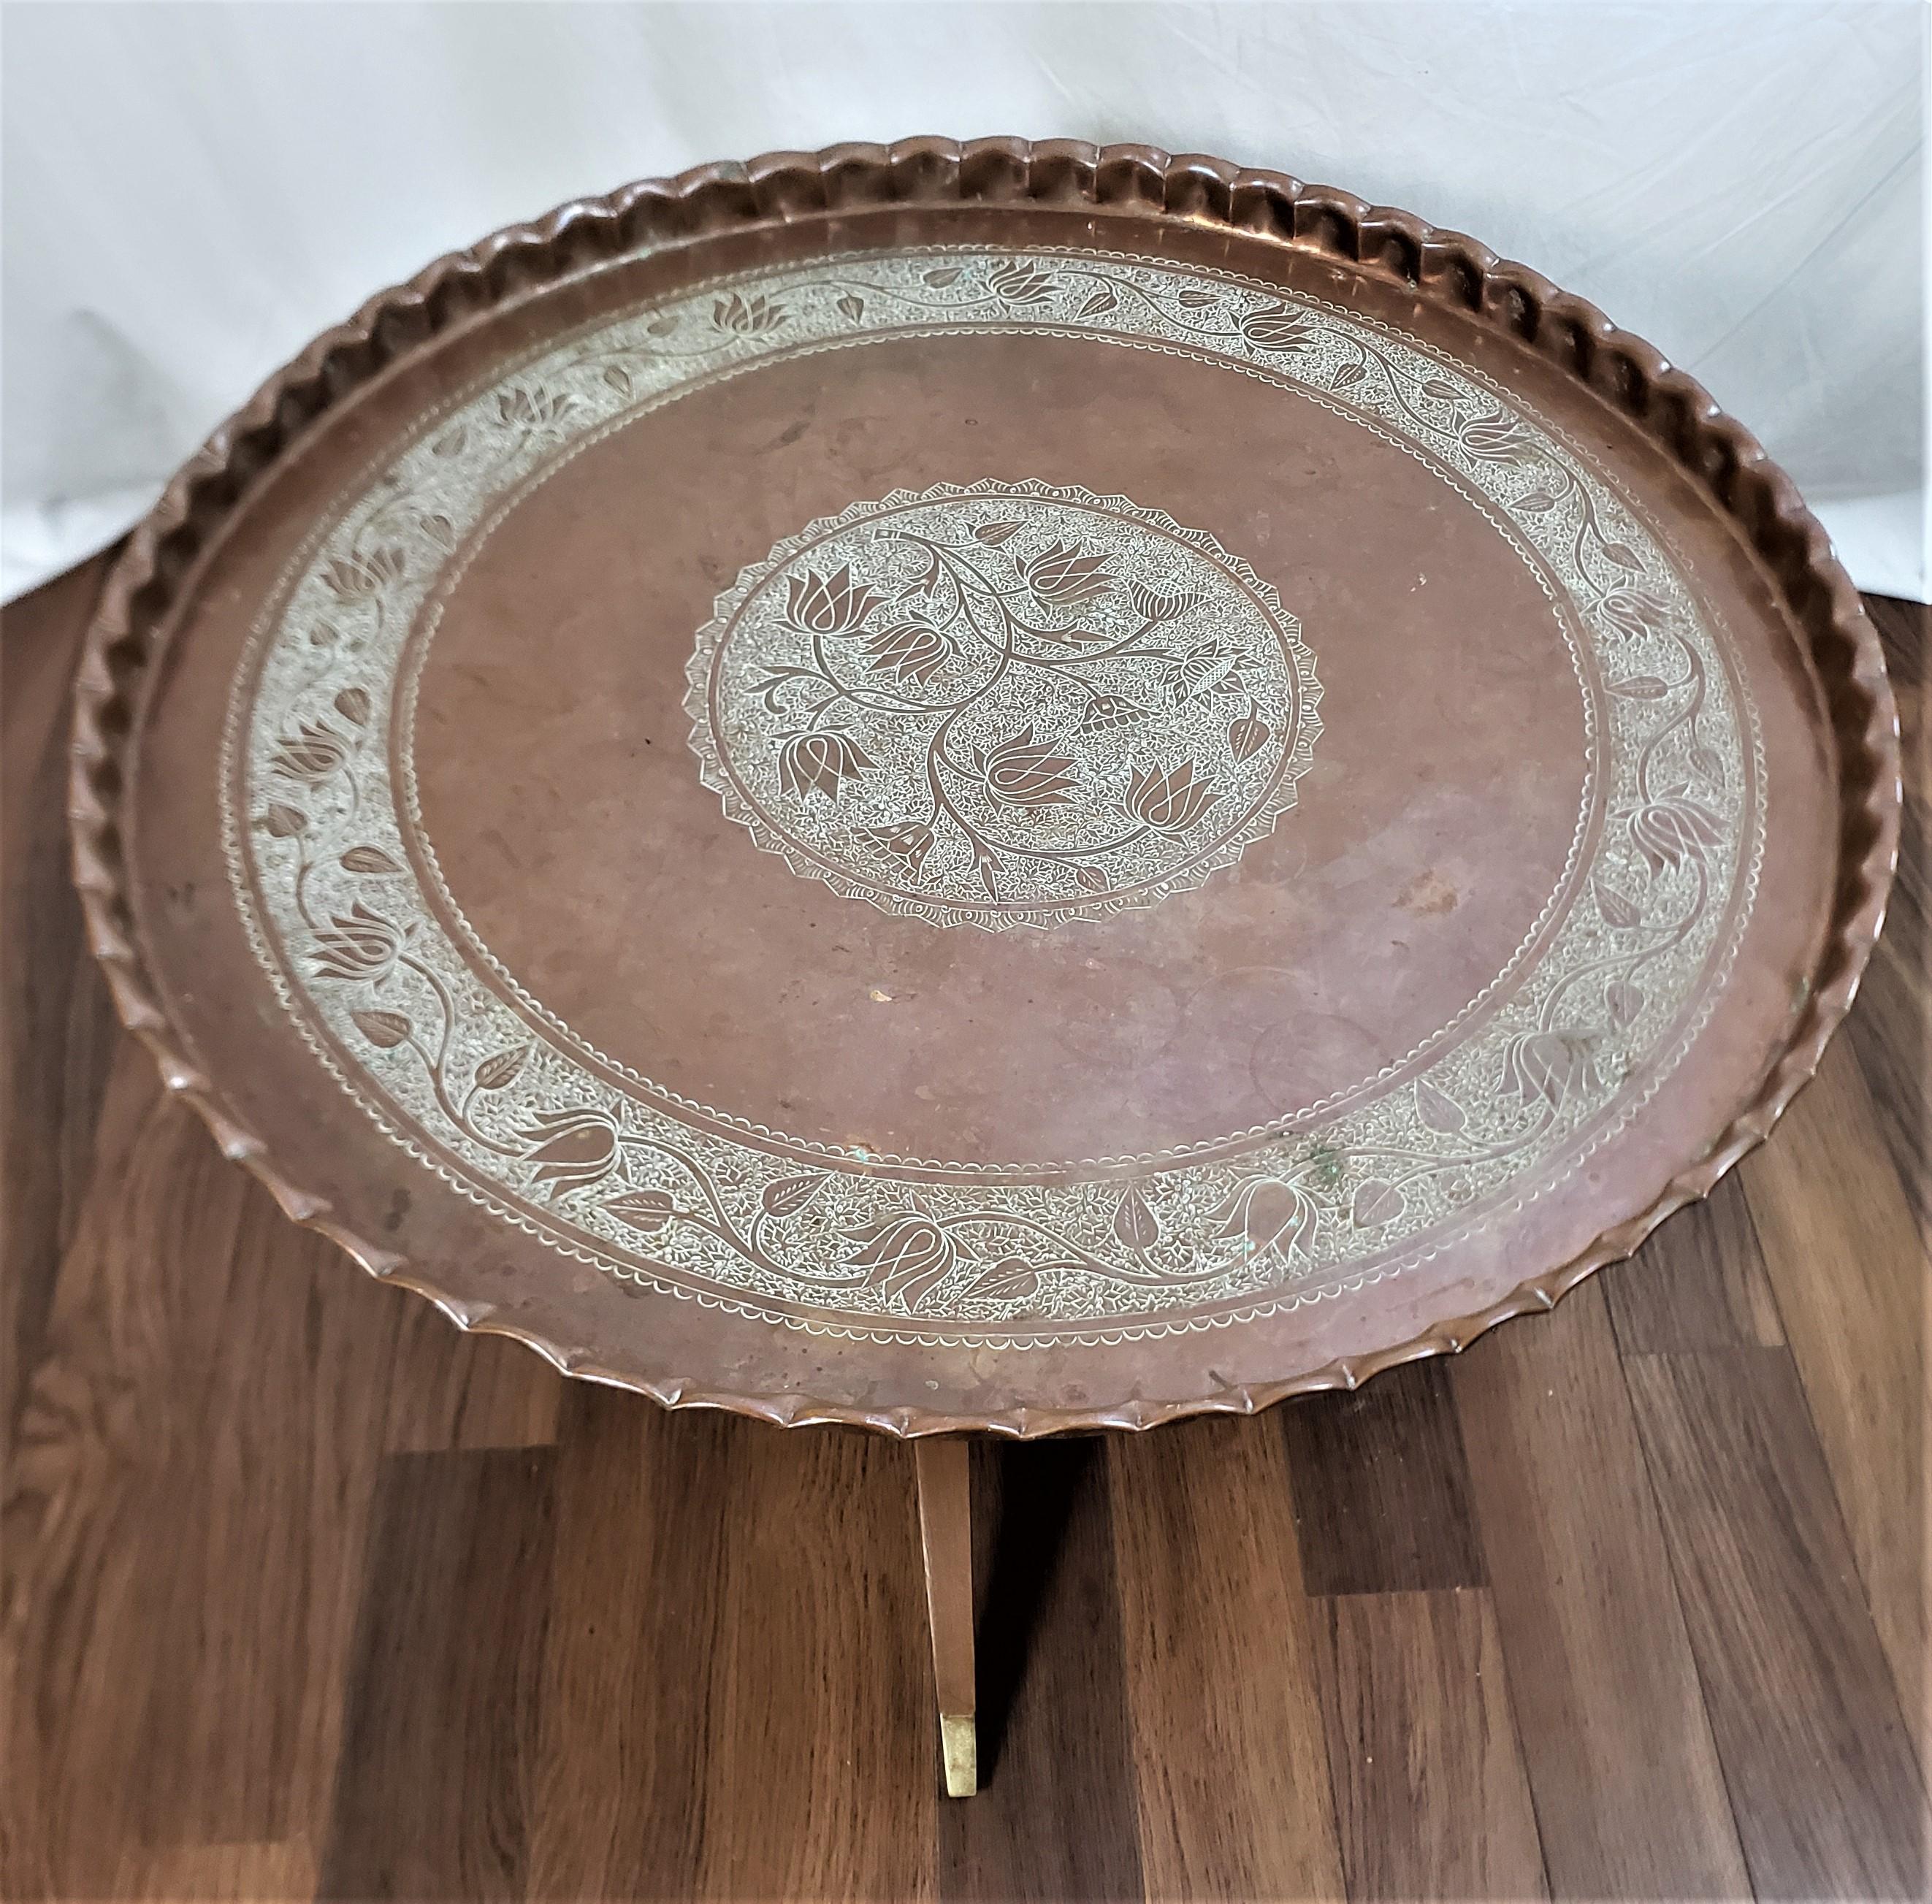 Dieser antike Tabletttisch ist unsigniert, stammt aber vermutlich aus Indien und wurde um 1920 im angro-indischen Stil gefertigt. Das handgefertigte Tablett besteht aus Kupfer mit einem eingravierten Blumenmedaillon in der Mitte und einem